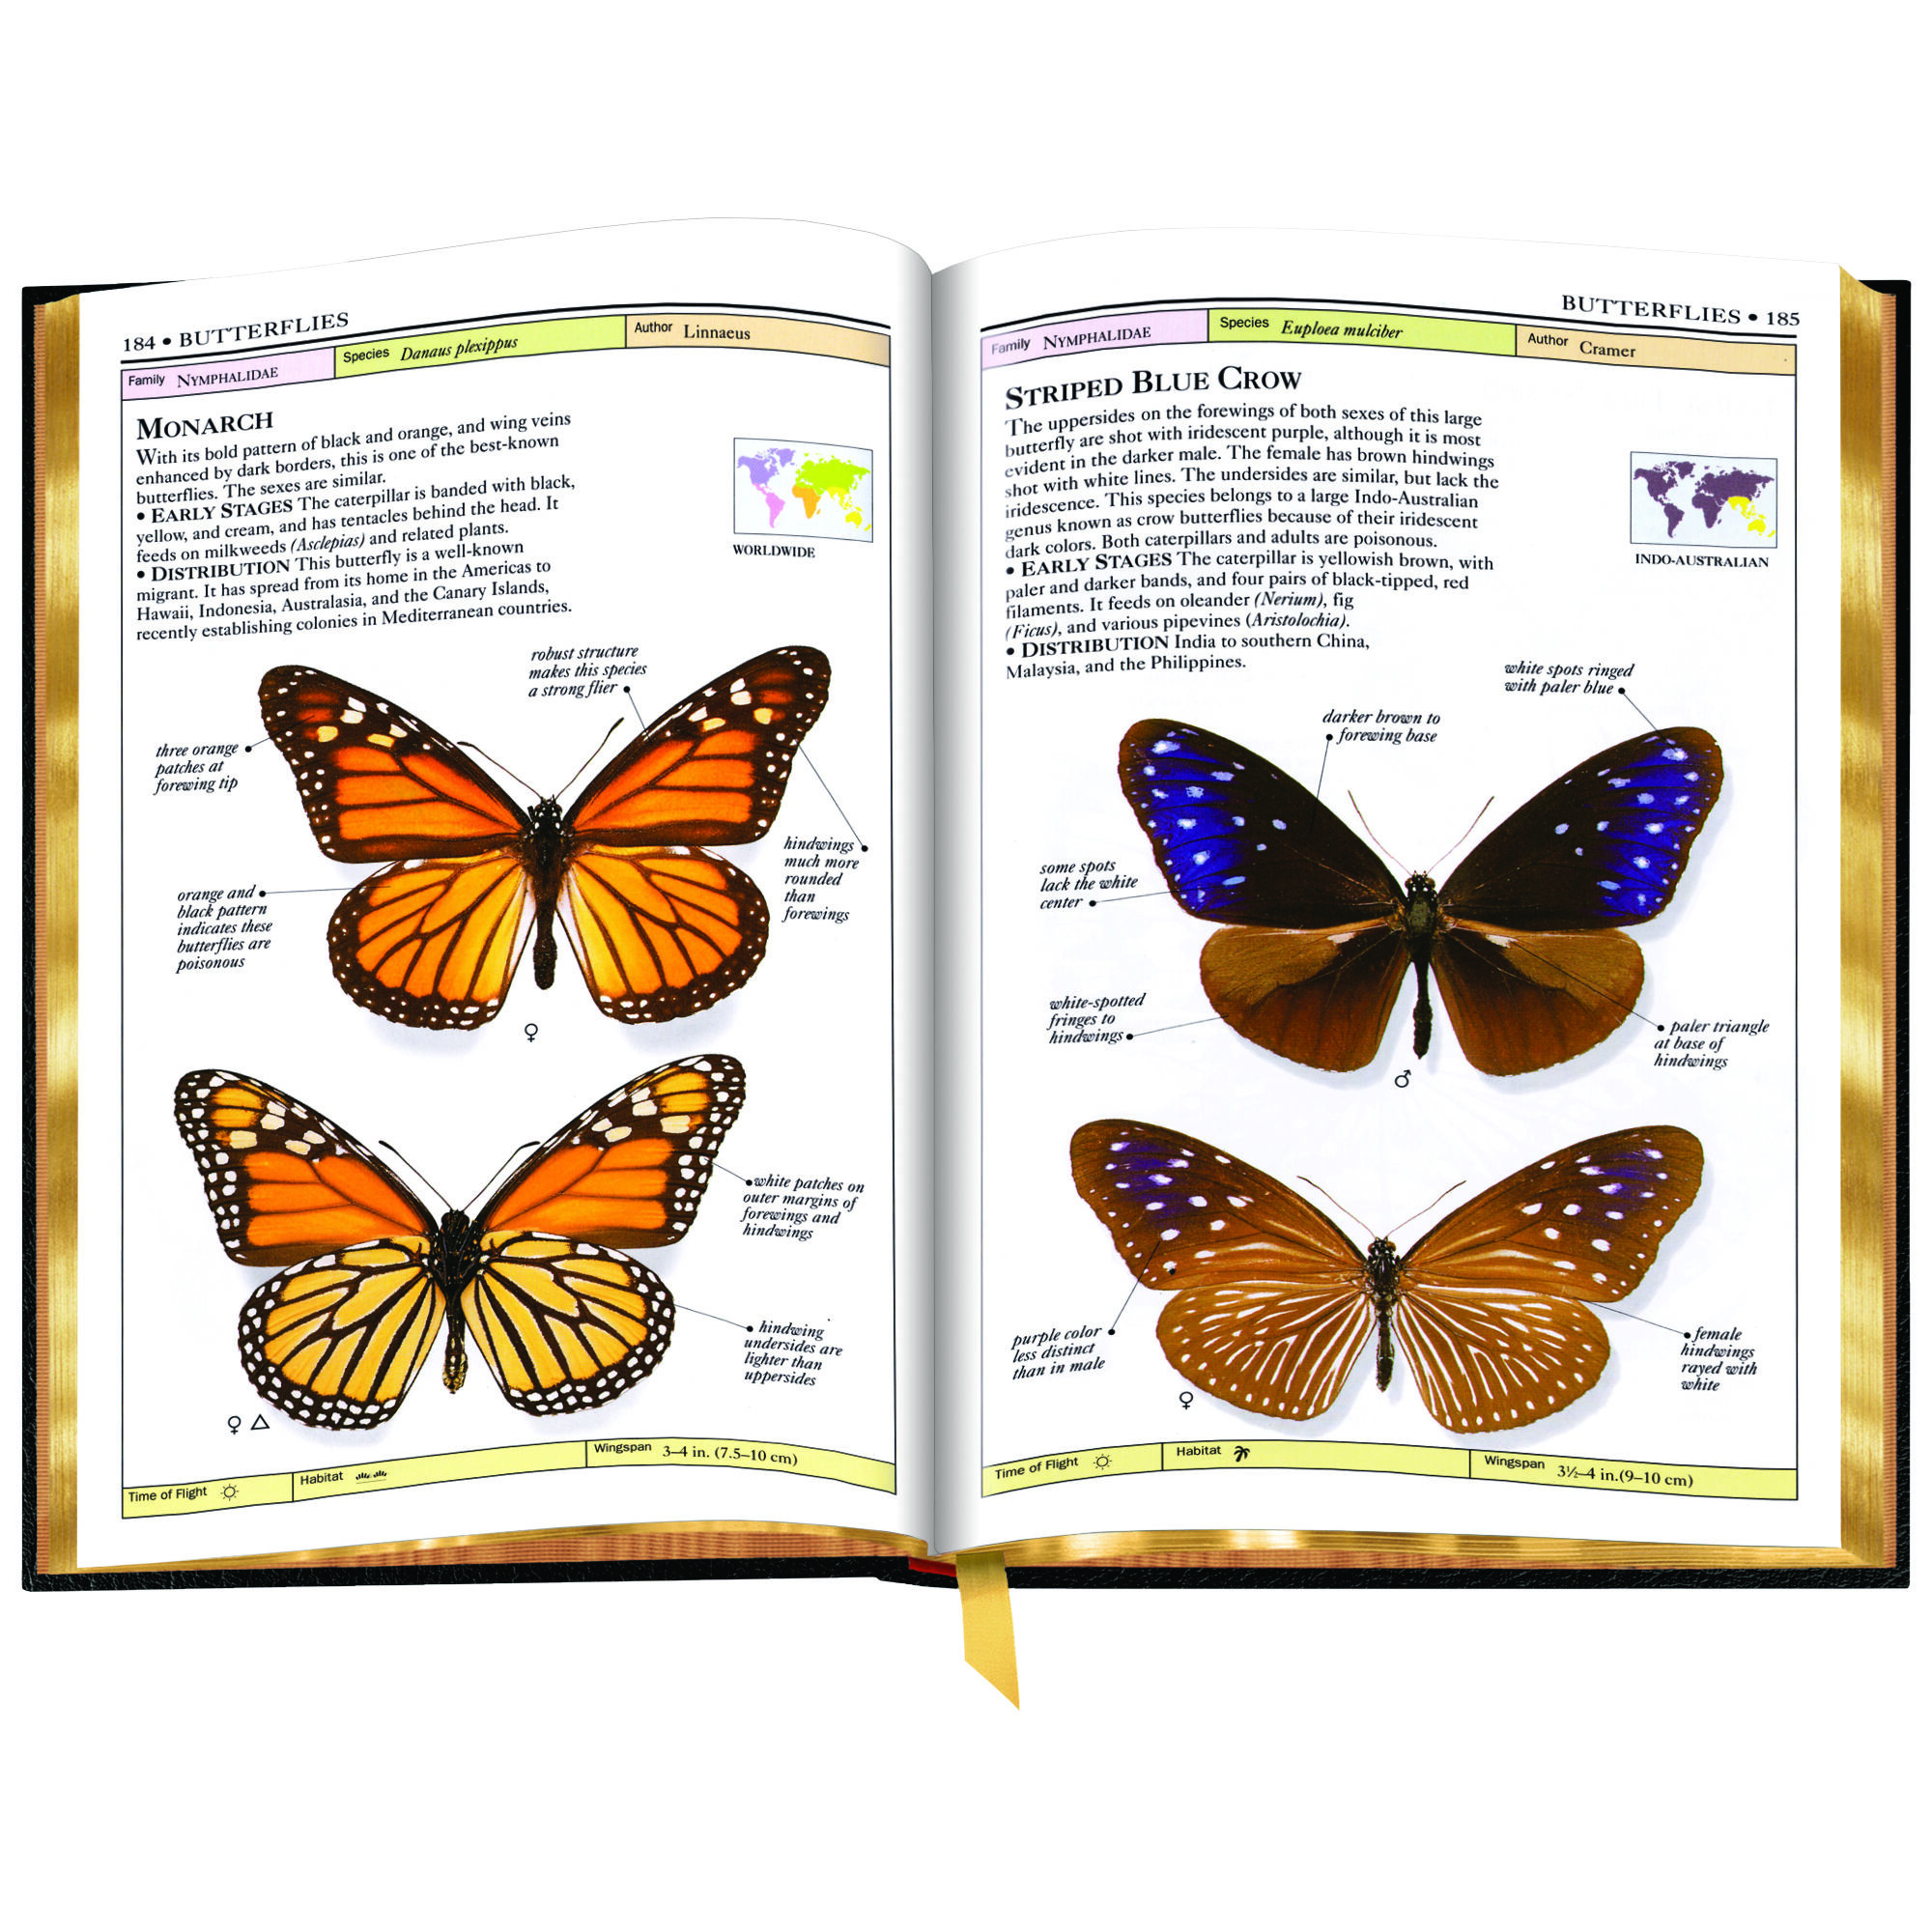 Butterflies and Moths 3860 e sp3